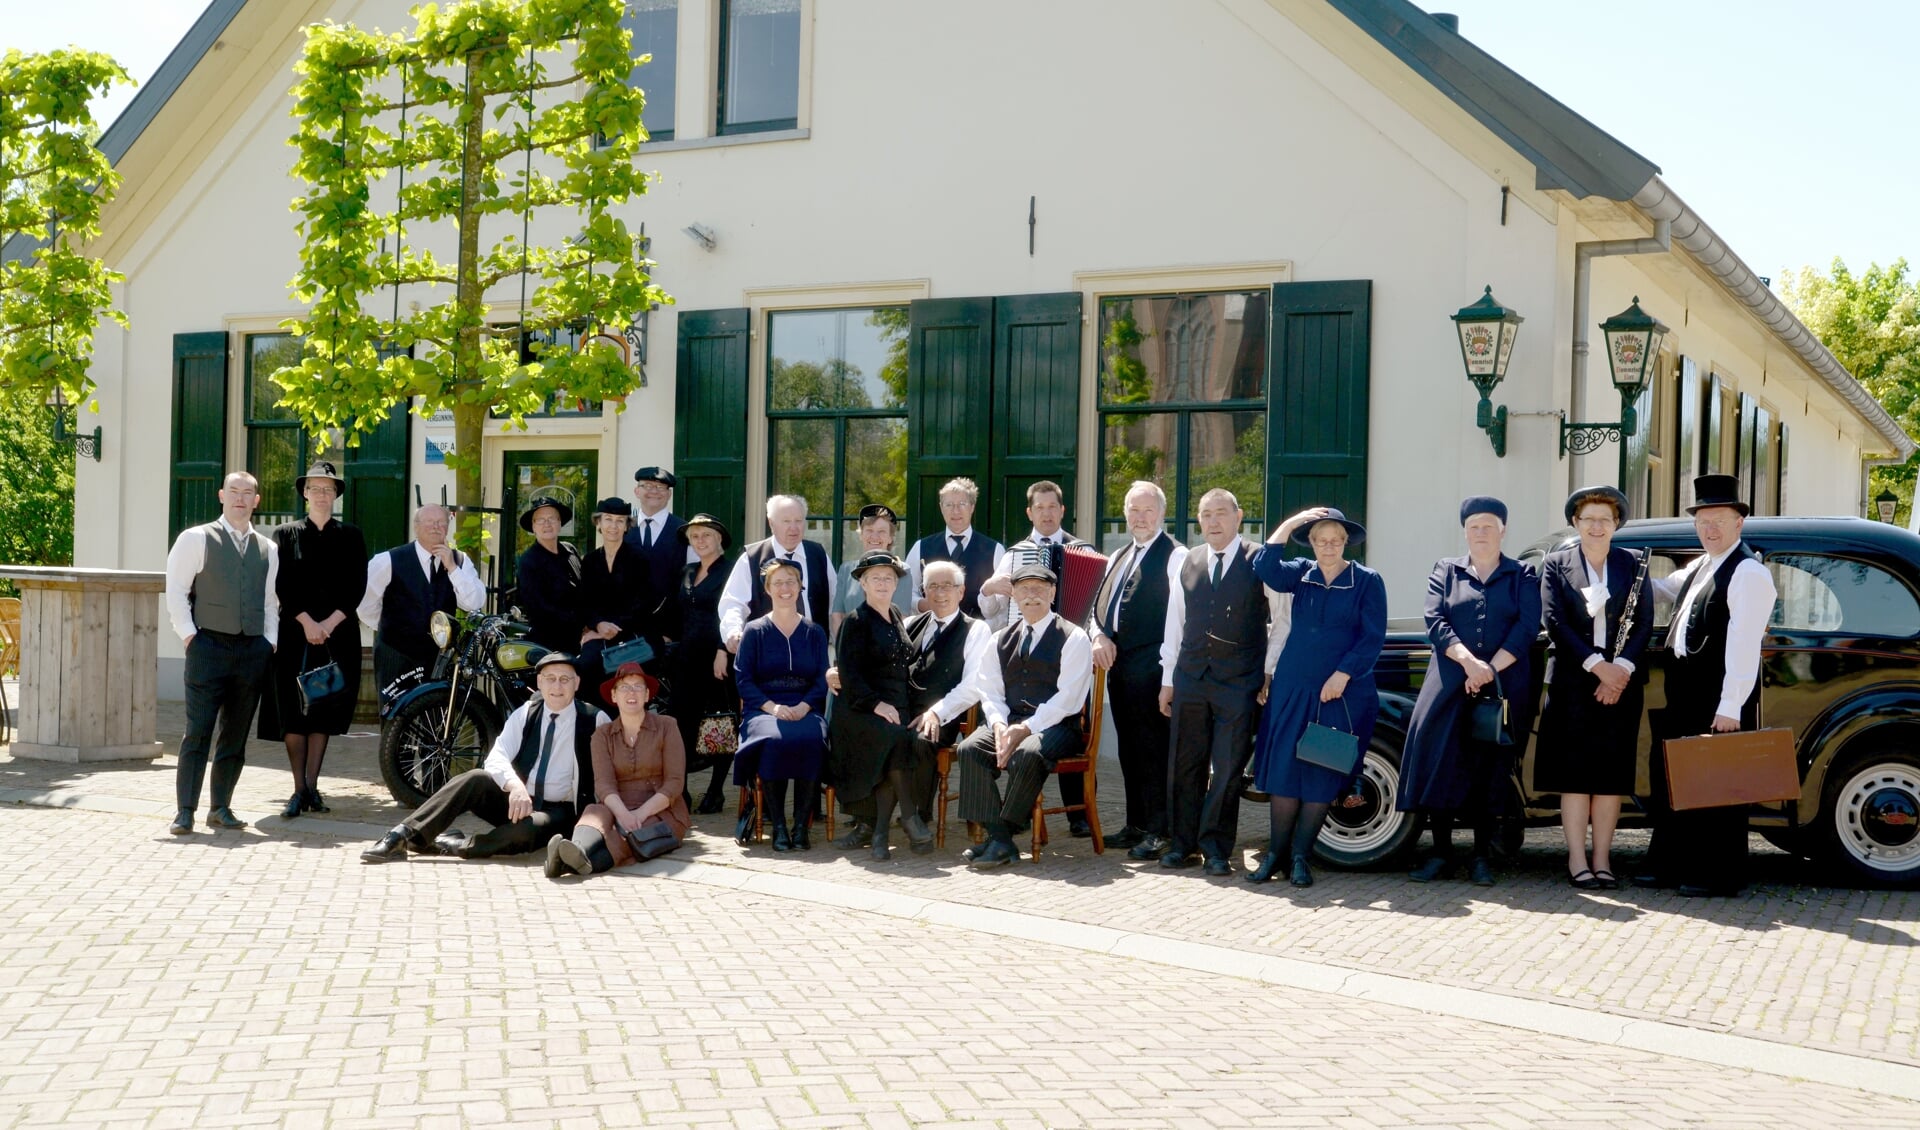 De Iesselschotsers uit Steenderen is een van de folkloregroepen die optreden tijdens de Folkloredag. Foto: PR